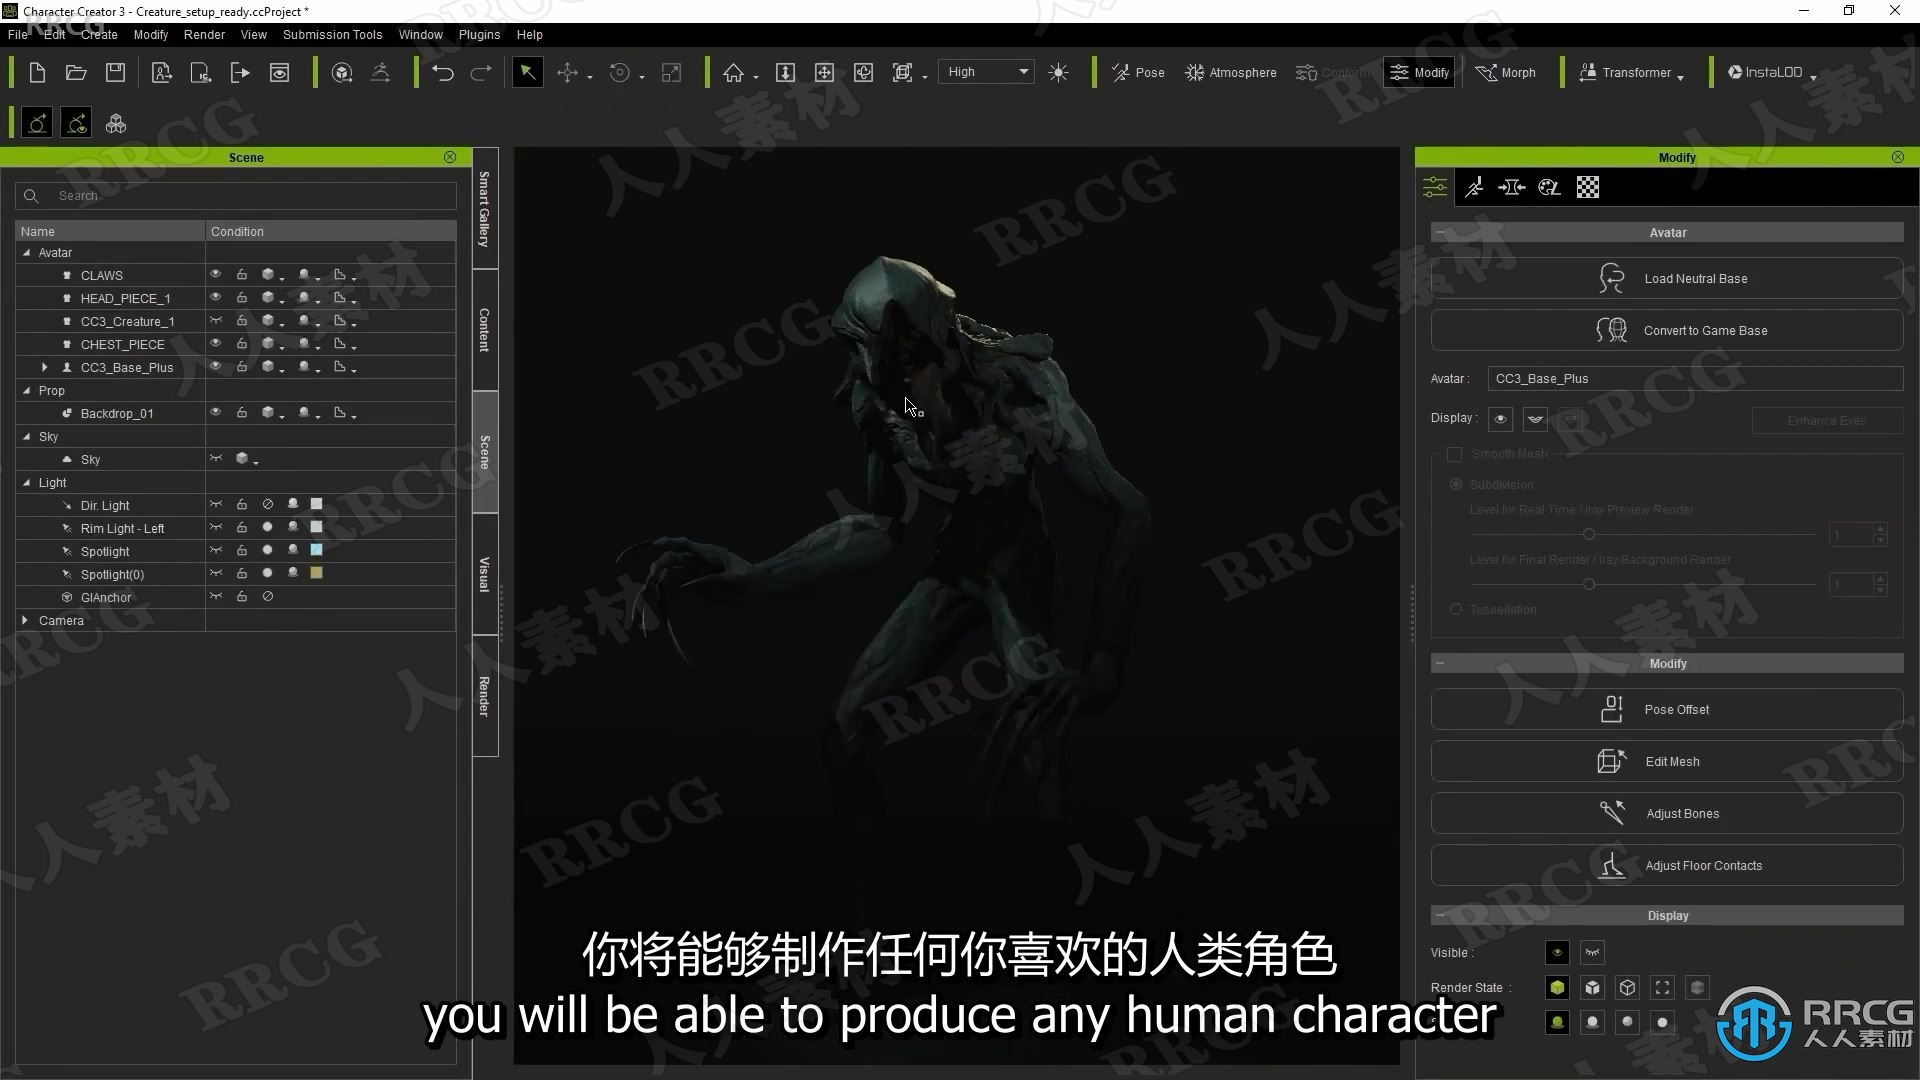 【中文字幕】Character Creator 3概念生物艺术设计全流程视频教程